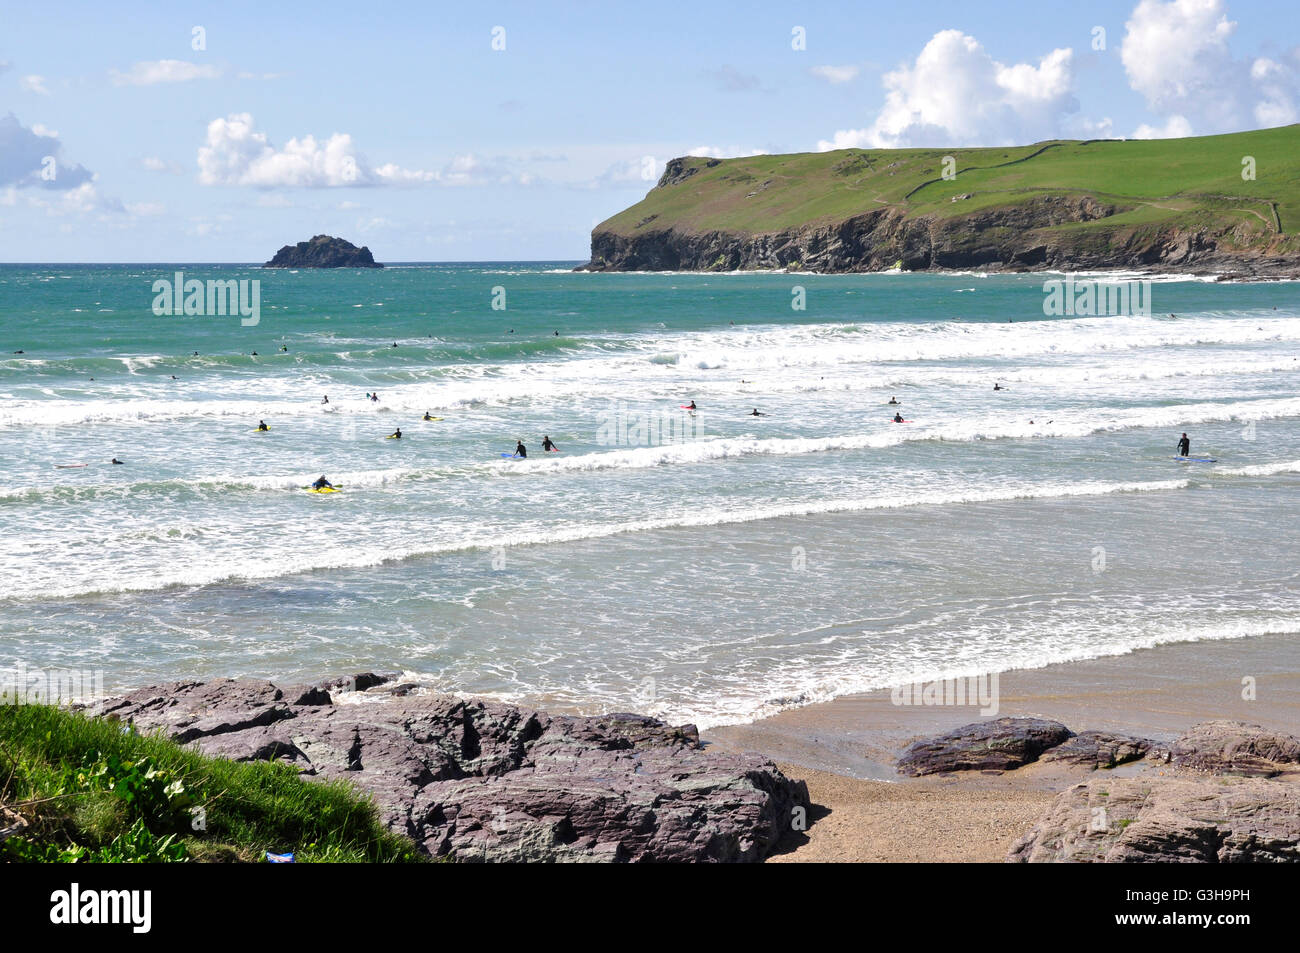 Plage de Polzeath - Cornwall - la flambée des vagues - surfers plafonné blanc - toile tête Pentire -mer bleue et le ciel - la lumière du soleil Banque D'Images